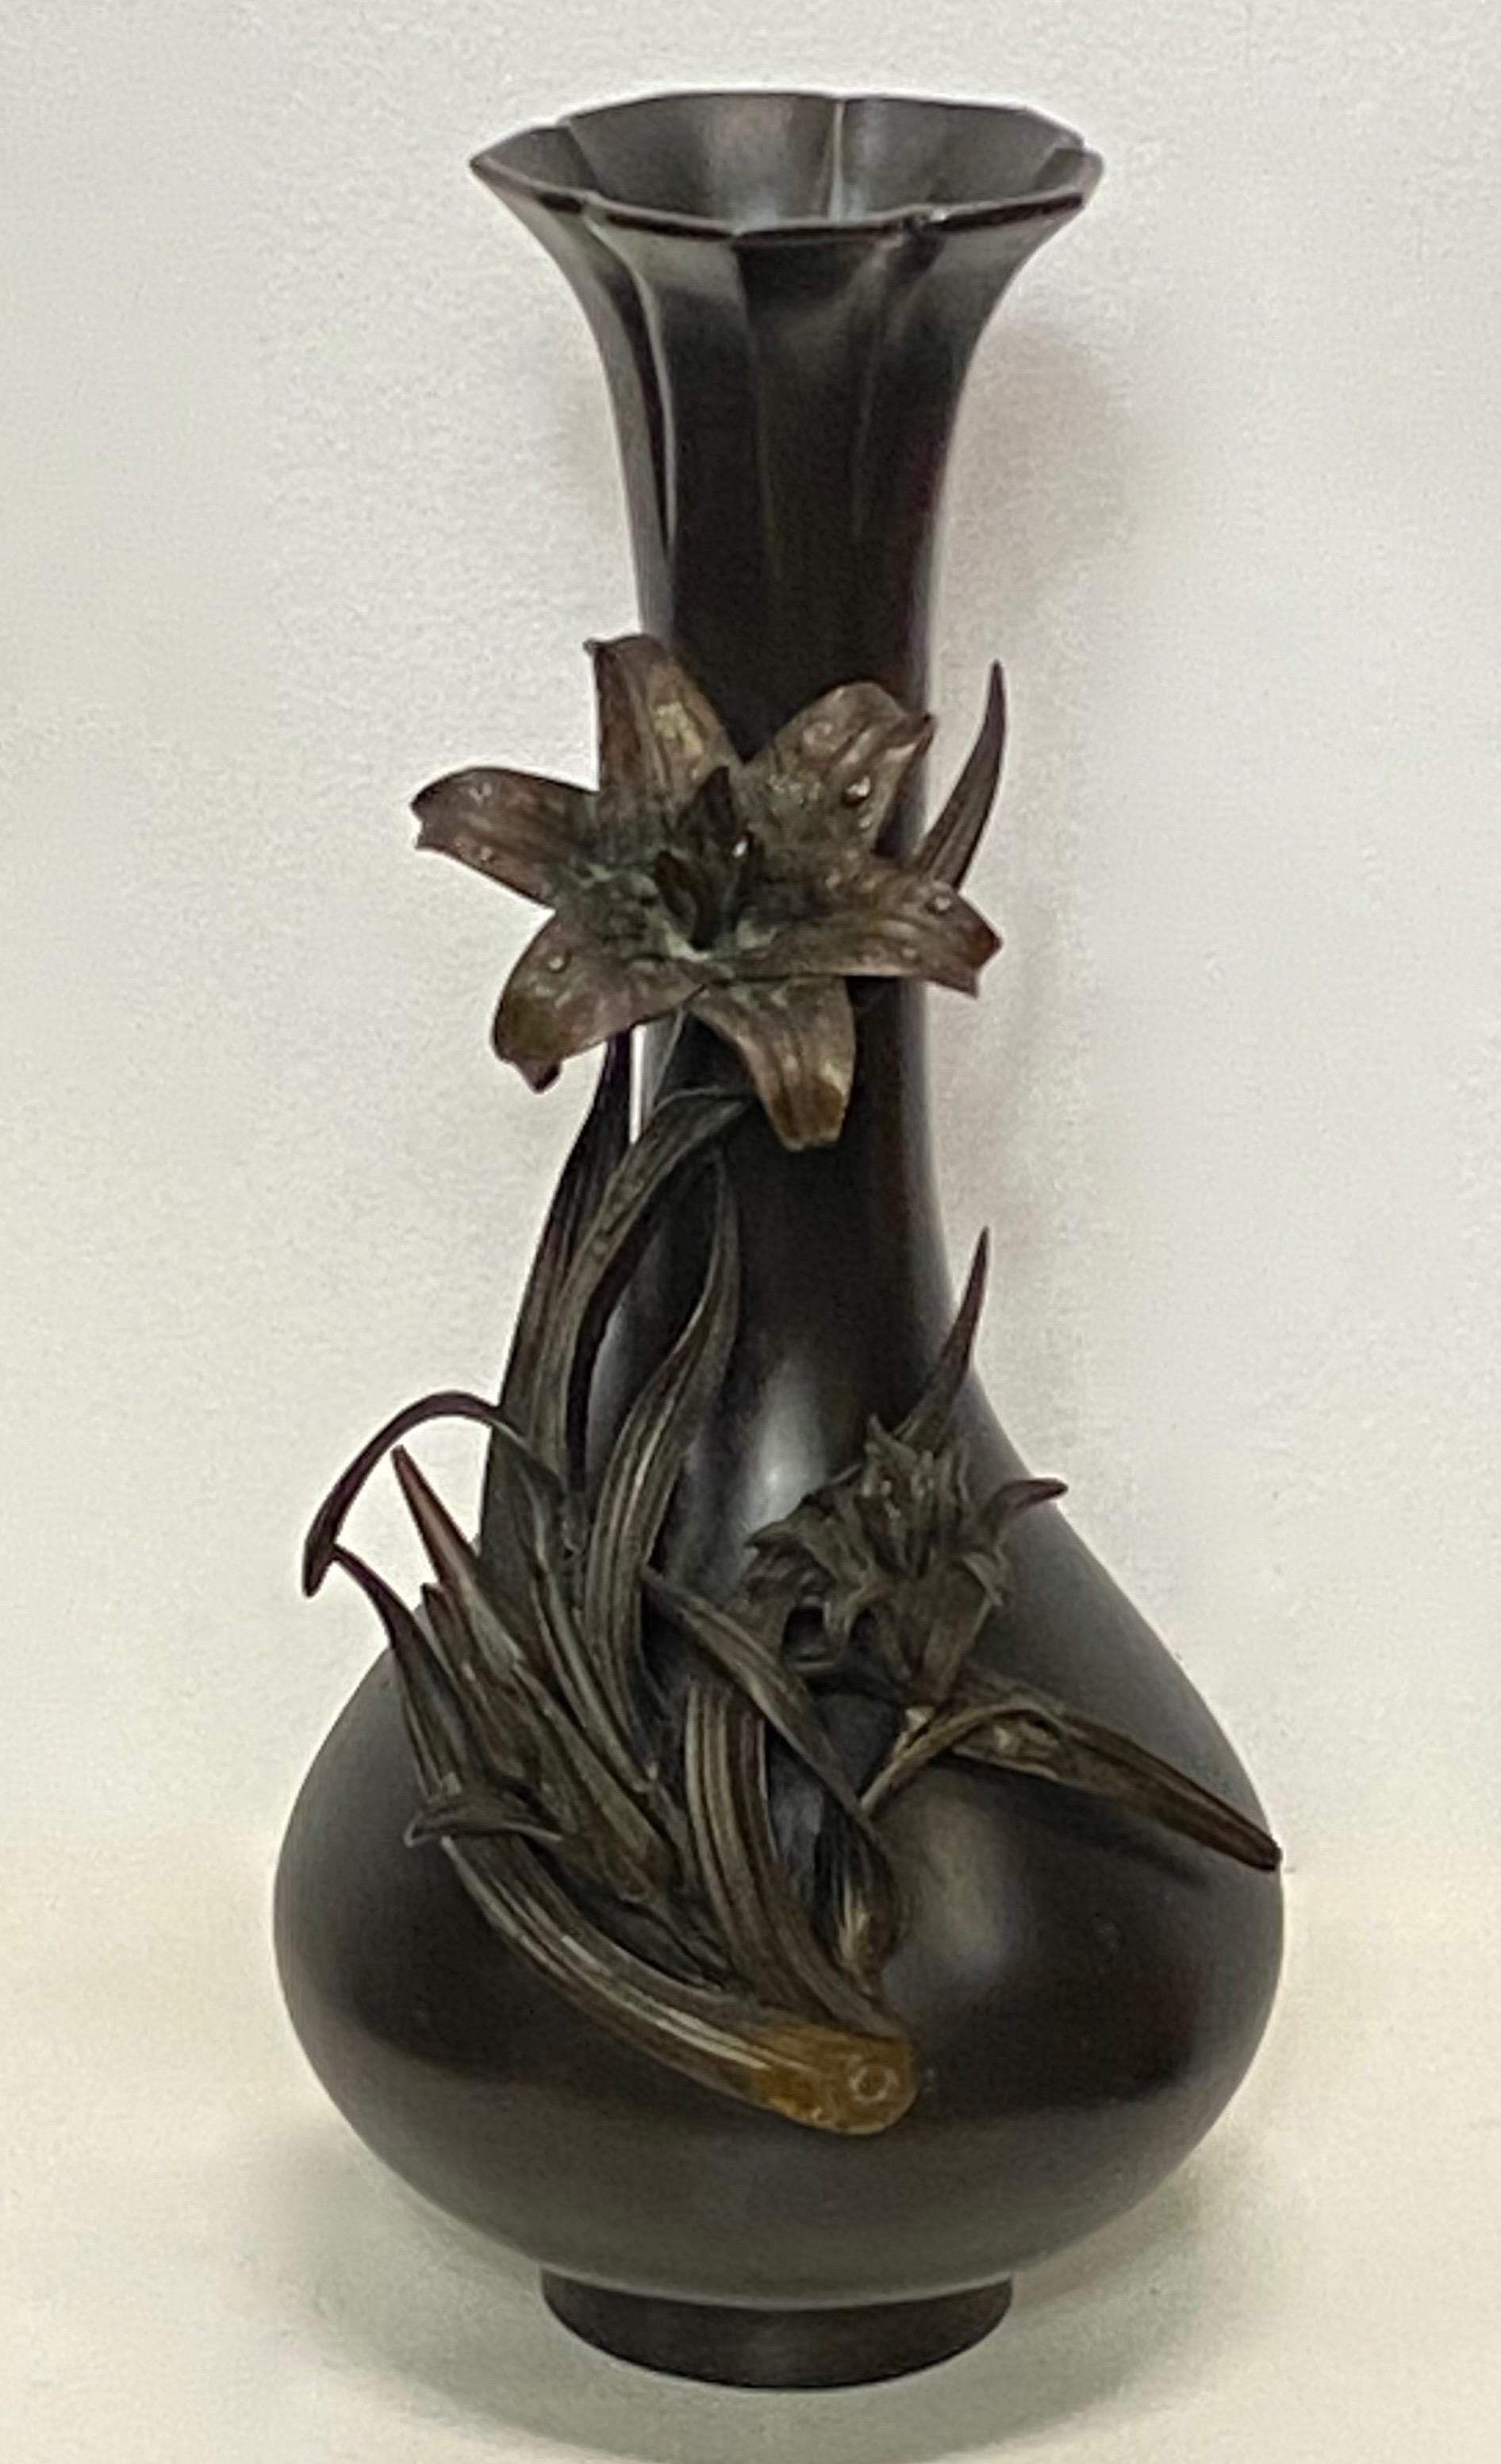 Un grand et élégant vase en bronze de la période Eleg, à décor floral et patine d'origine, non signé.
Japon, dernier quart du XIXe siècle.

